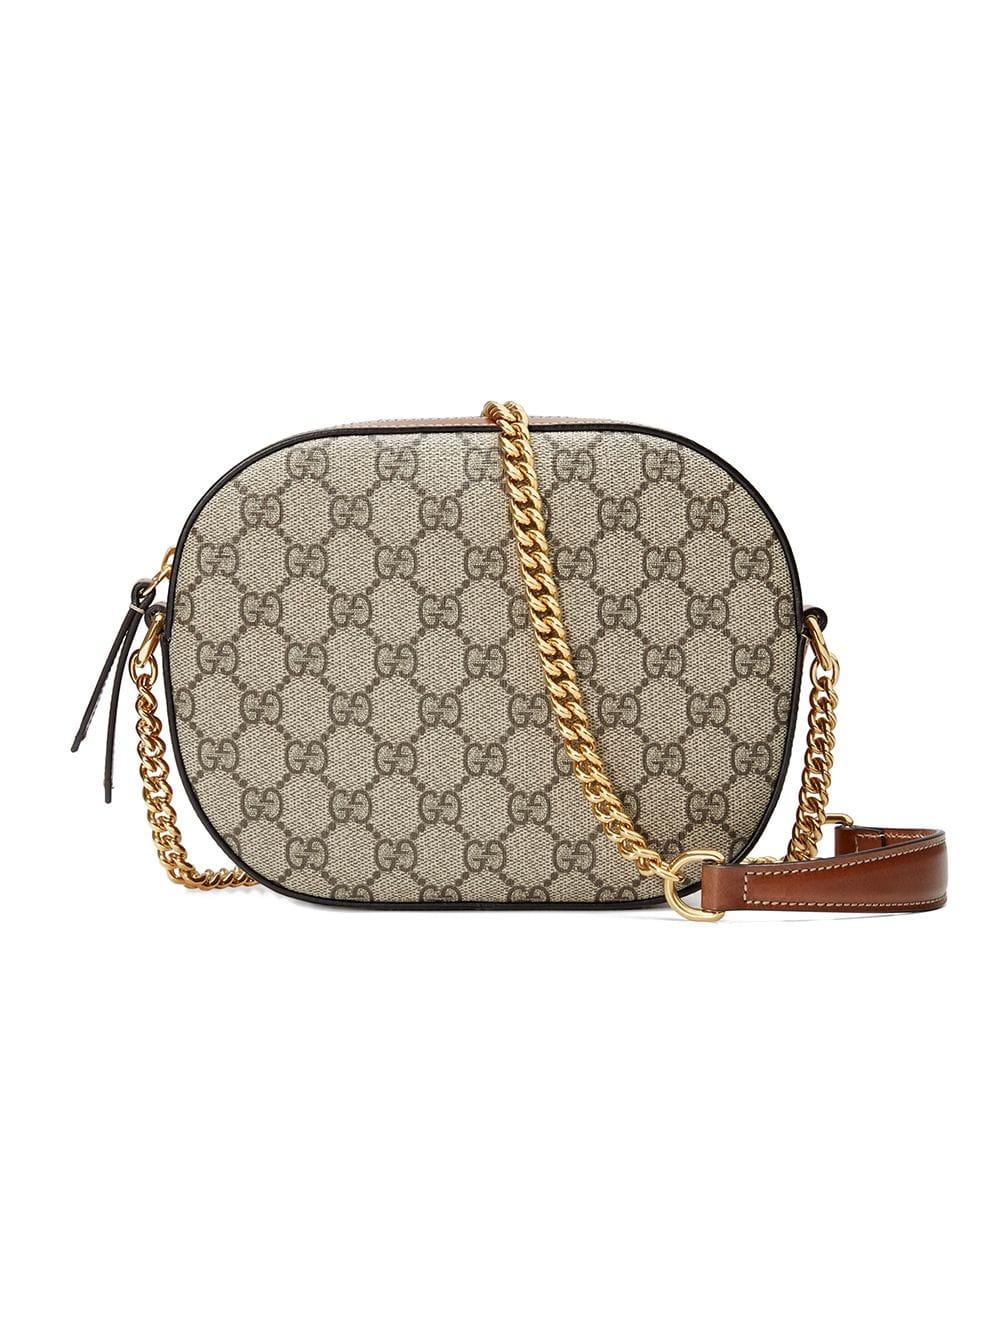 Gucci Canvas GG Supreme Mini Chain Bag in Brown | Lyst